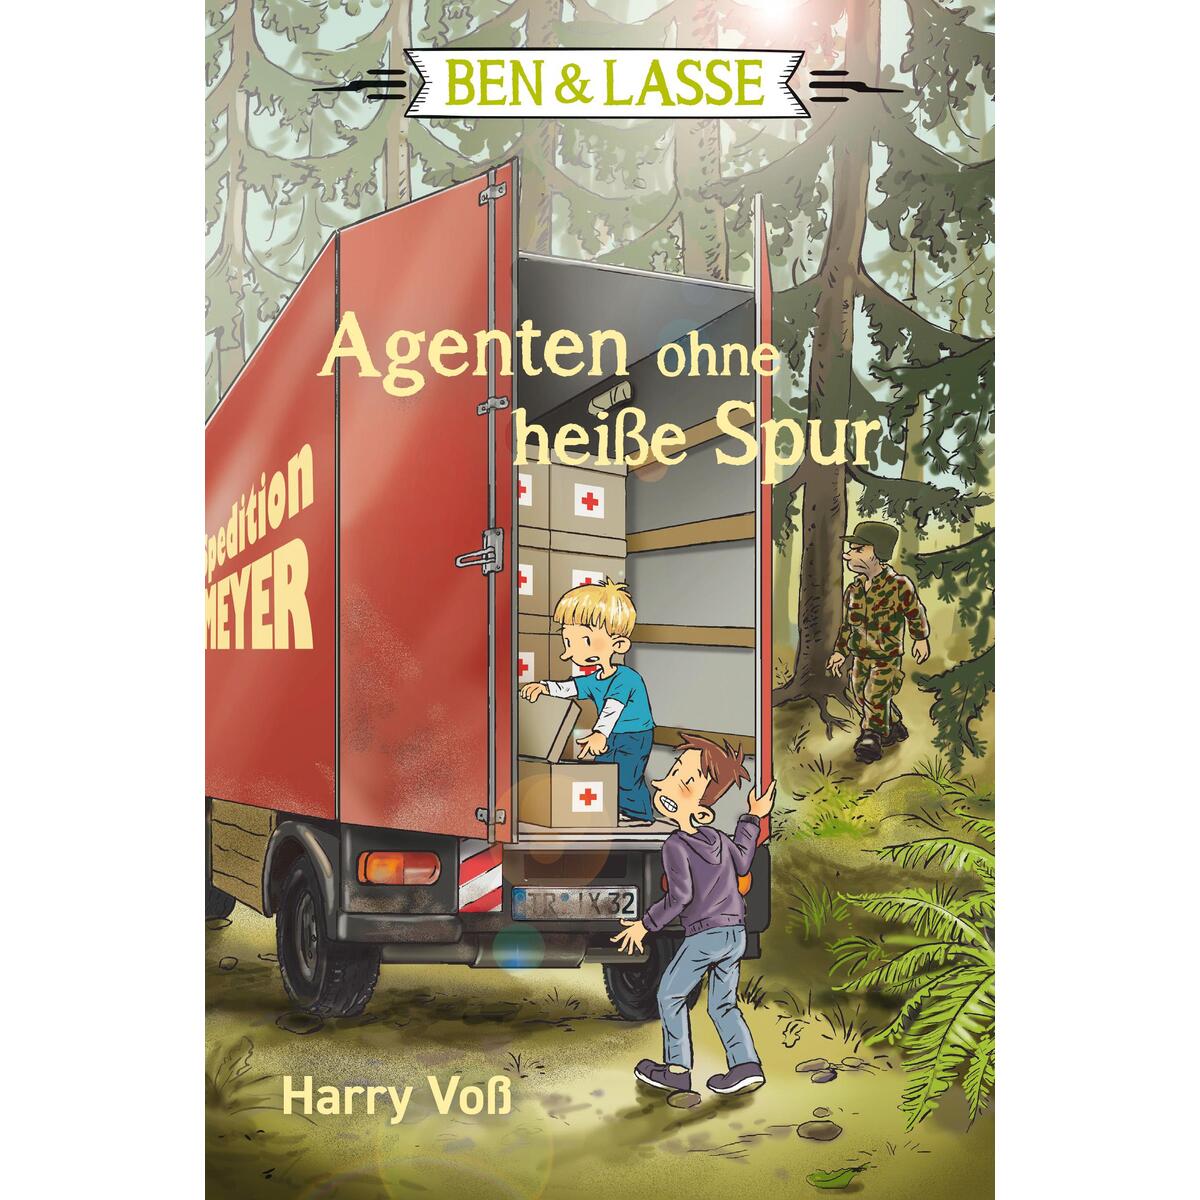 Ben & Lasse - Agenten ohne heiße Spur von SCM Brockhaus, R.